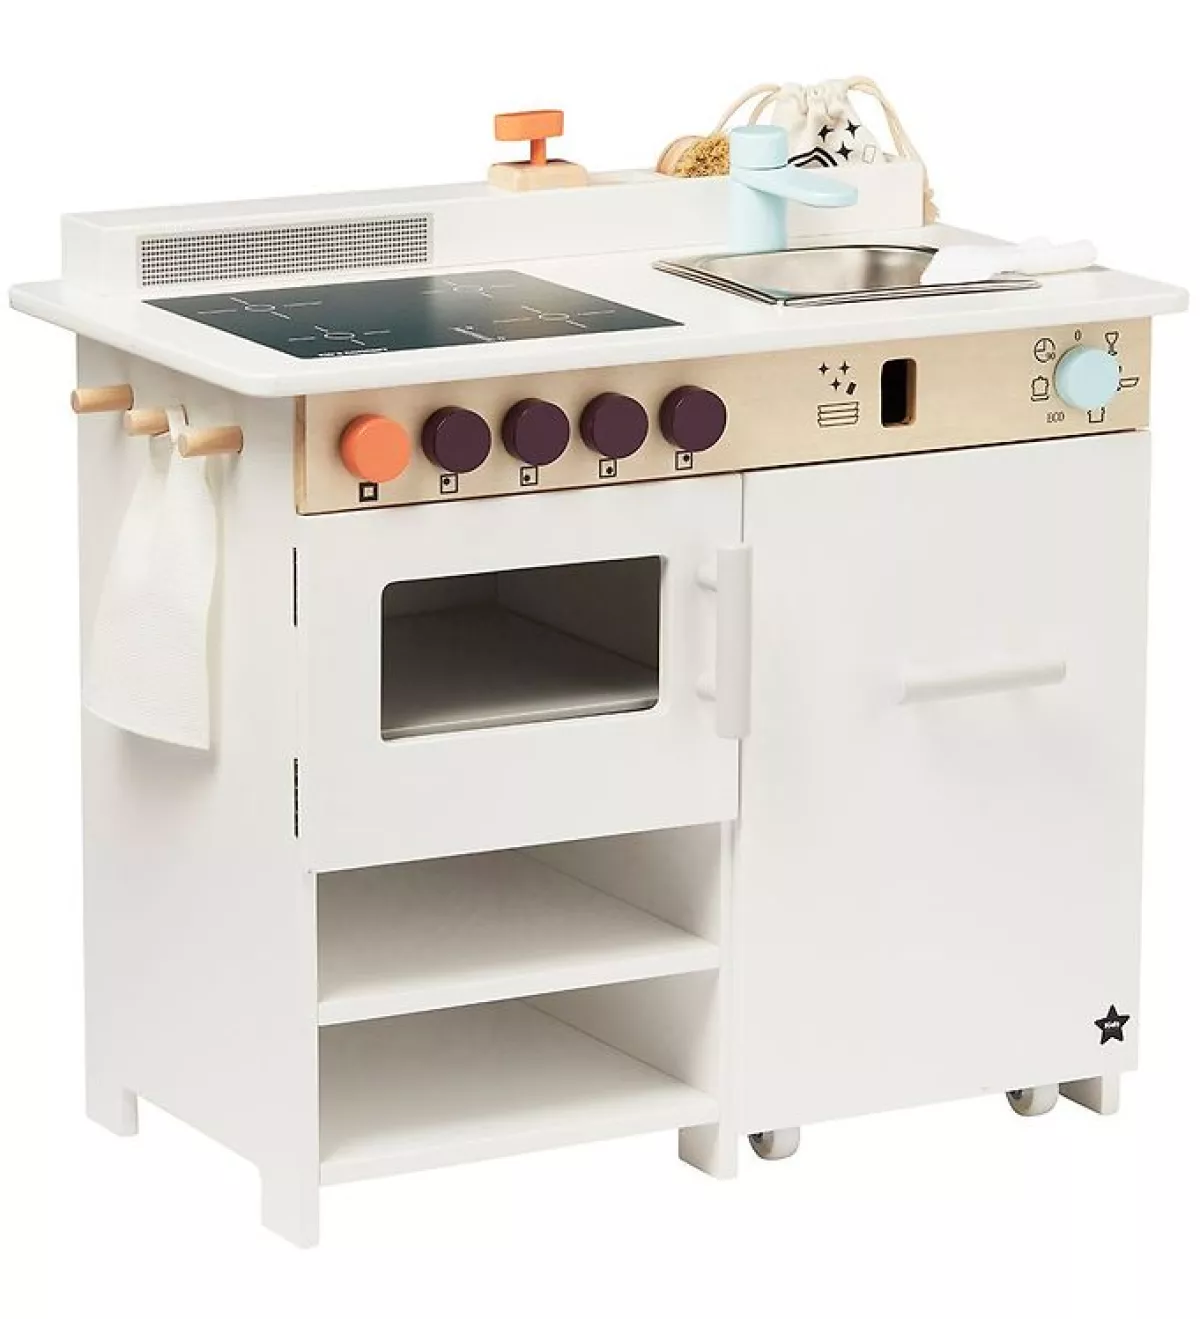 #1 - Kids Concept - Legekøkken med opvaskemaskine